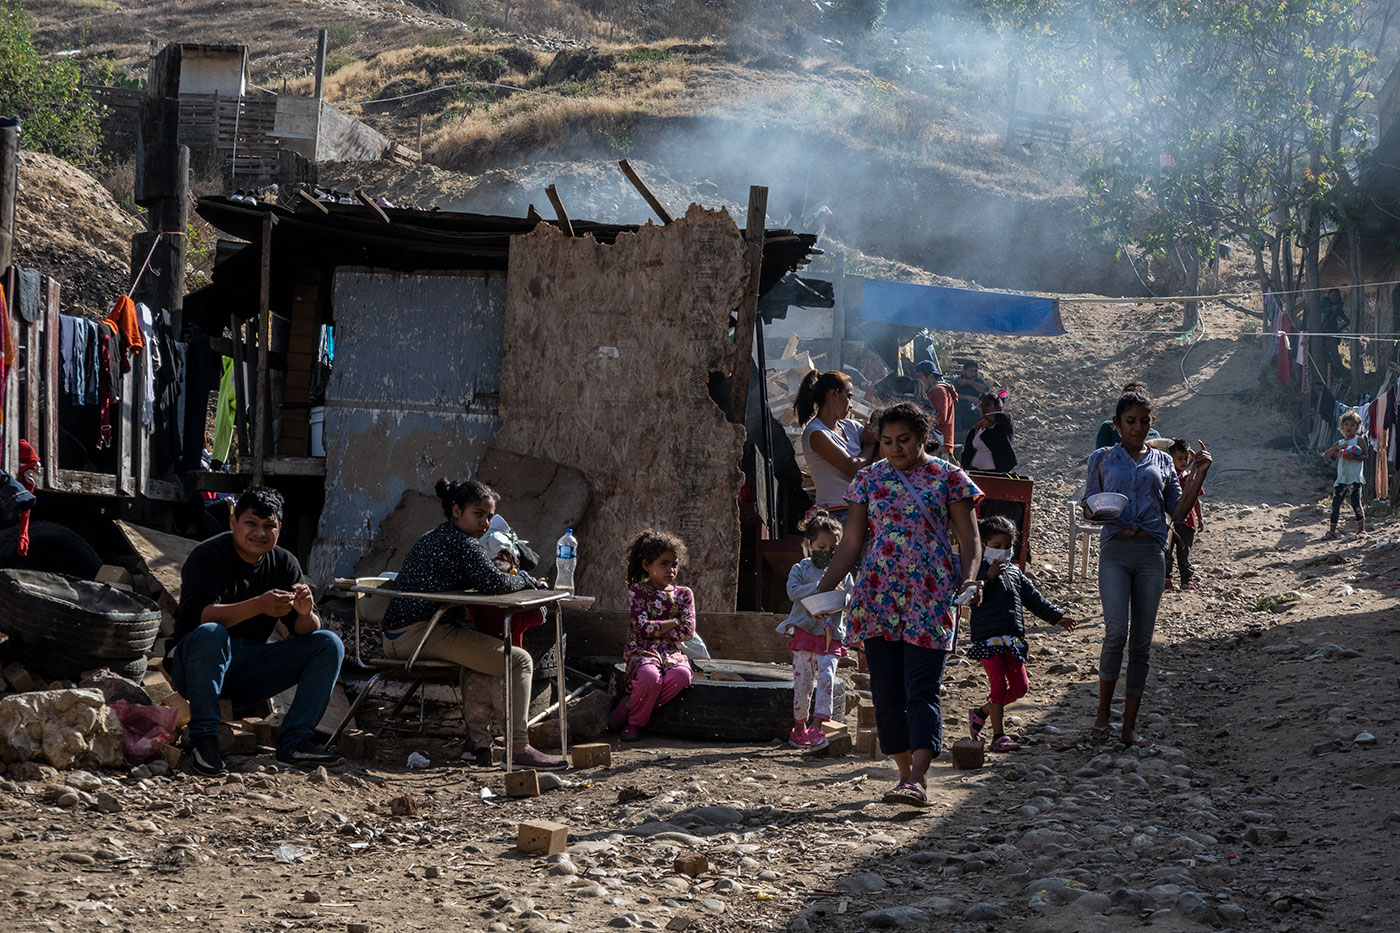 El Cañón del Alacrán en Tijuana es el hogar de miles de personas expulsadas desde Estados Unidos. Muchos sobreviven en el albergue del pastor Gustavo Banda.